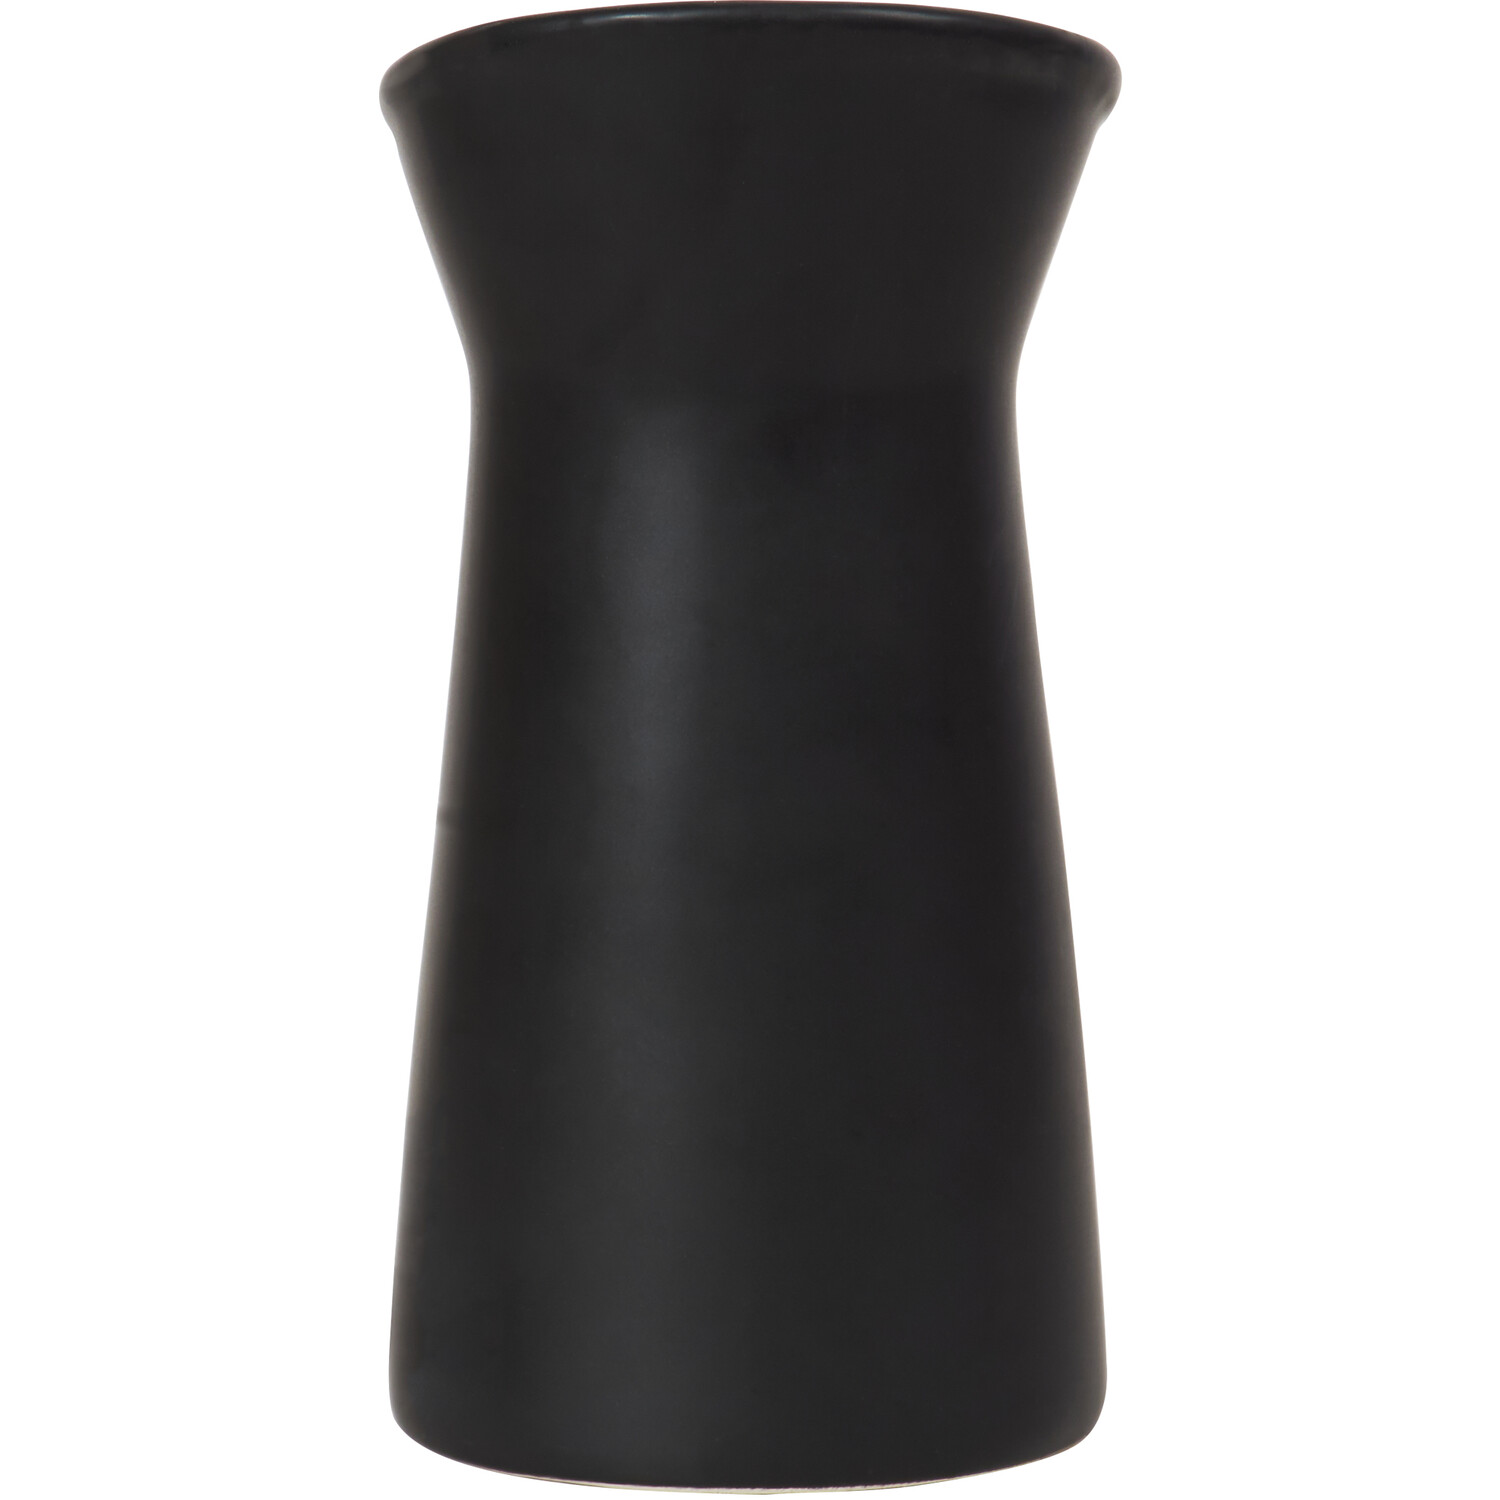 Matte Black Jug Shaped Ceramic Vase Image 2